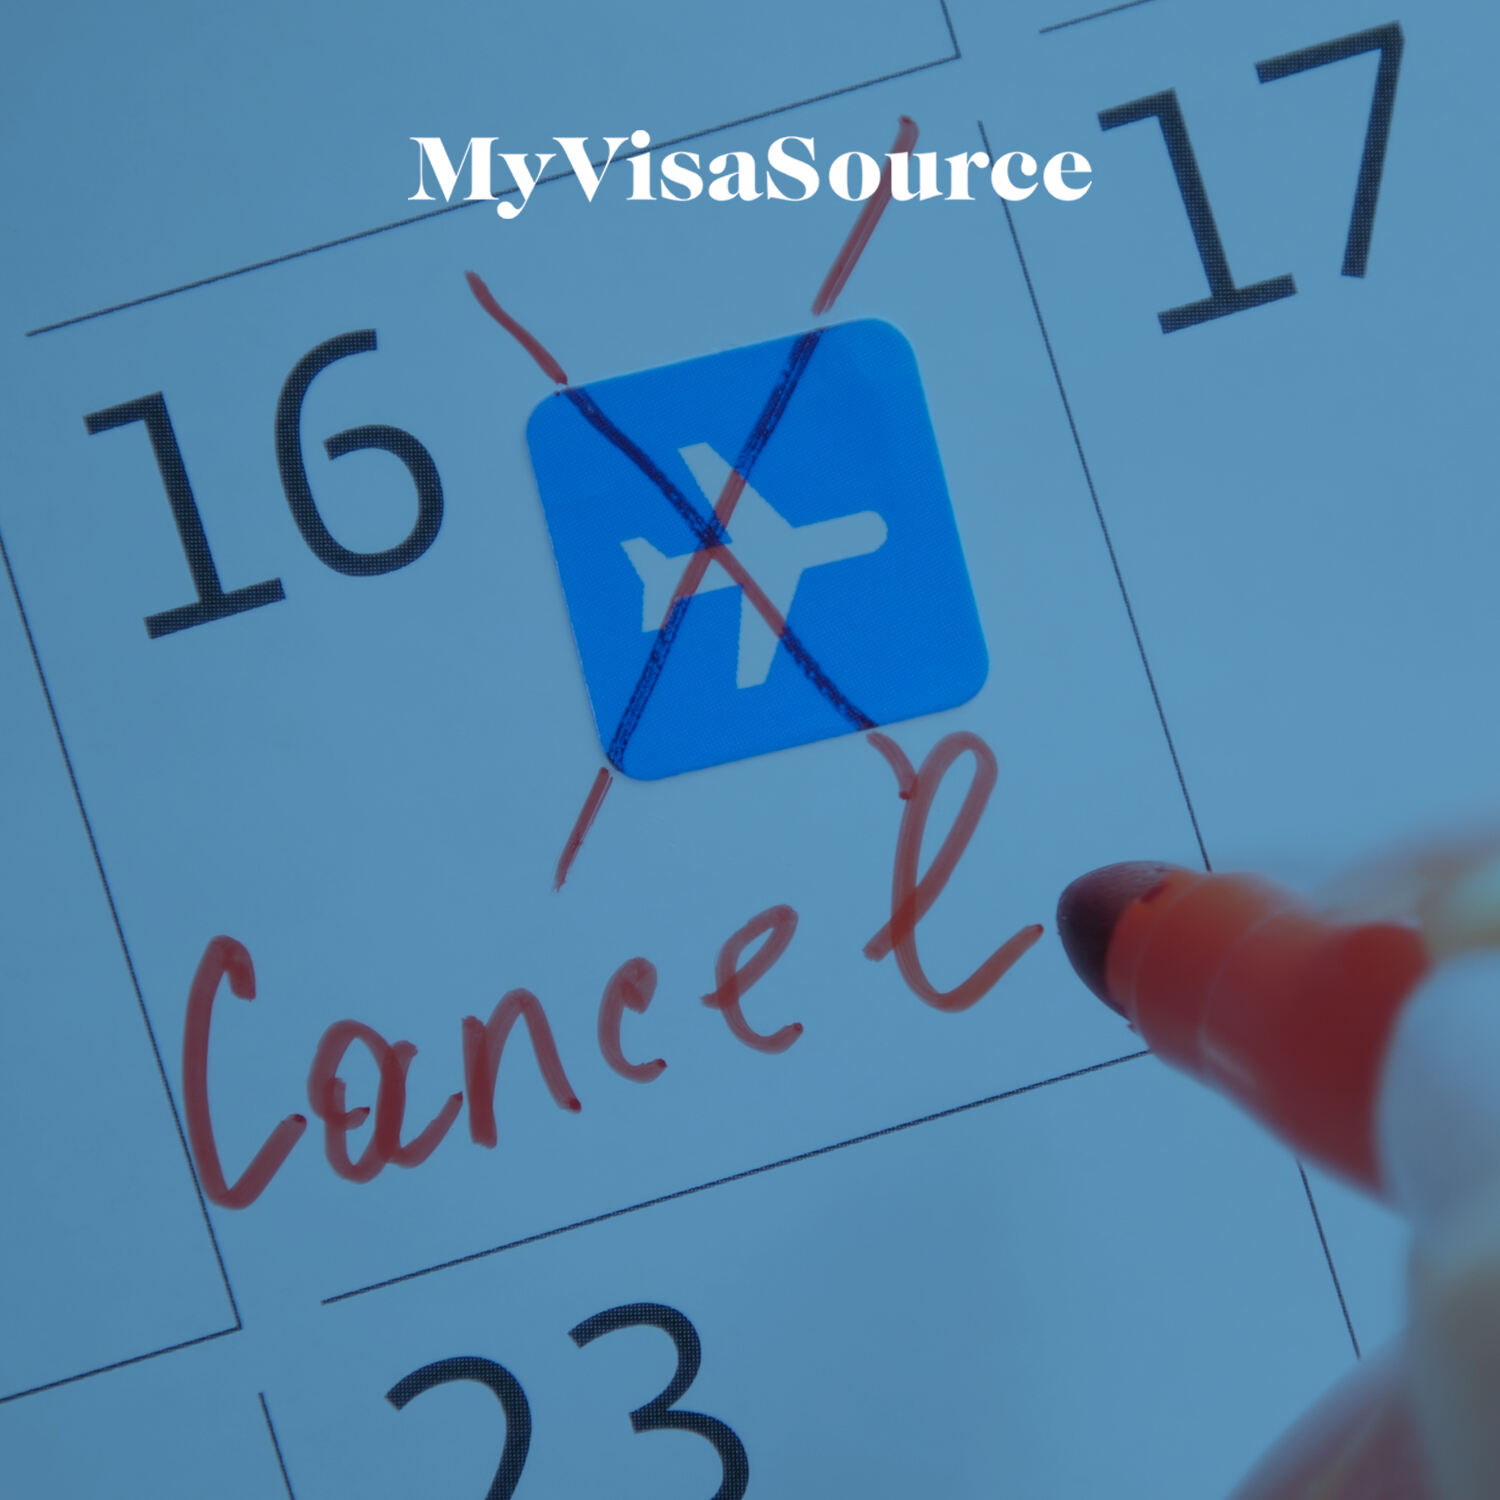 cancelled flight on a calendar date my visa source